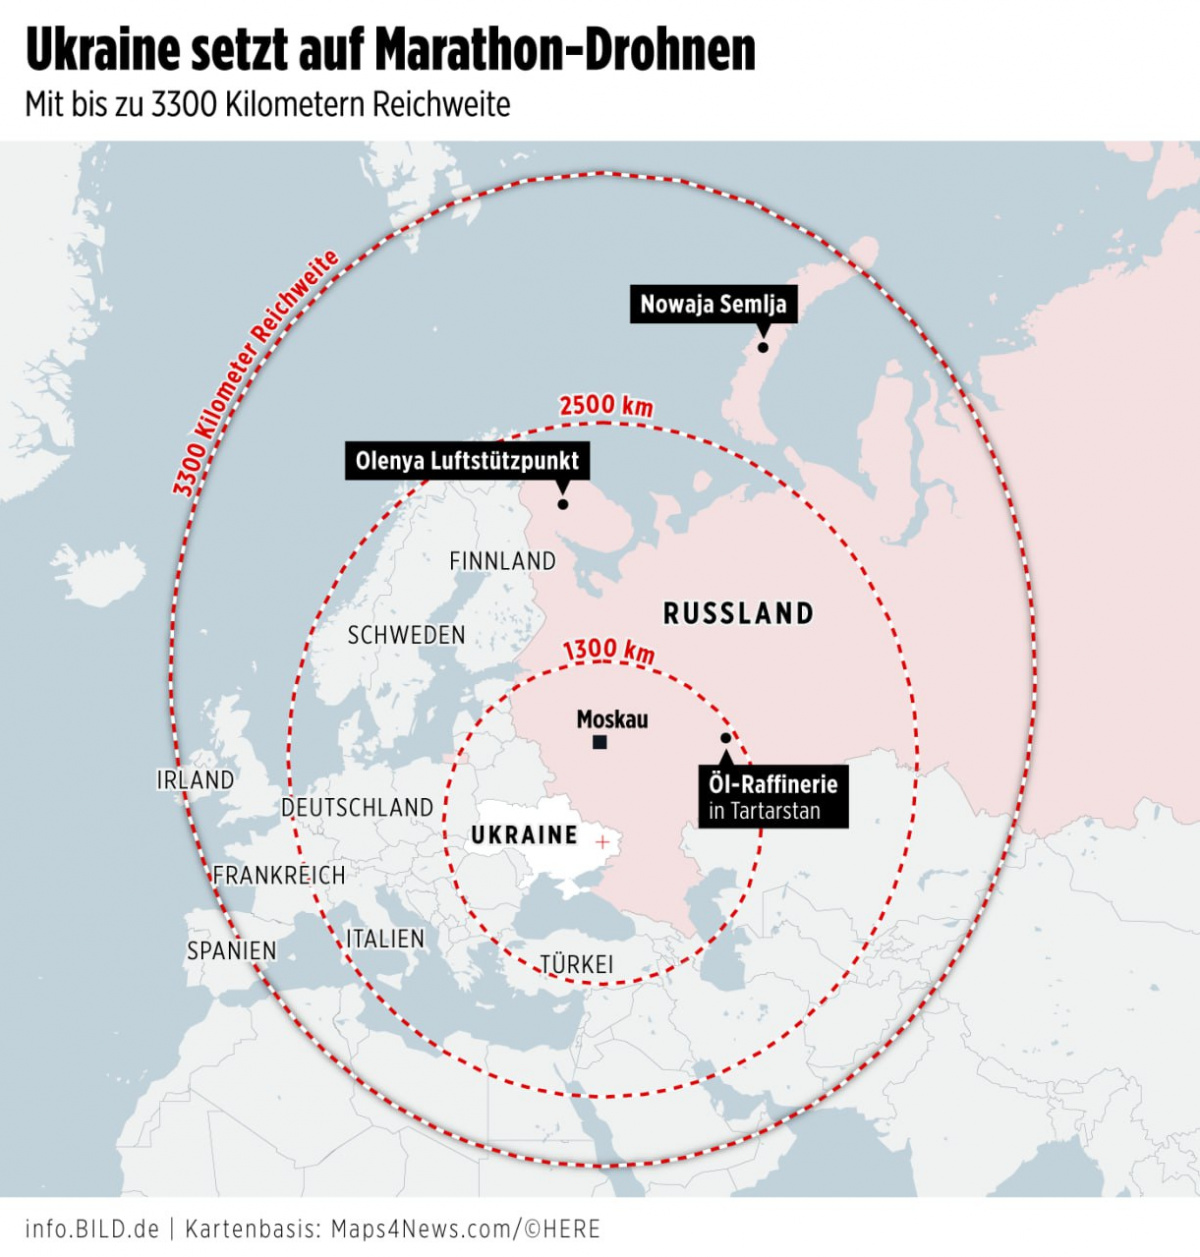 Украинские беспилотники вскоре могут бить по российским объектам в Заполярье и на Урале. Инфографика: Bild